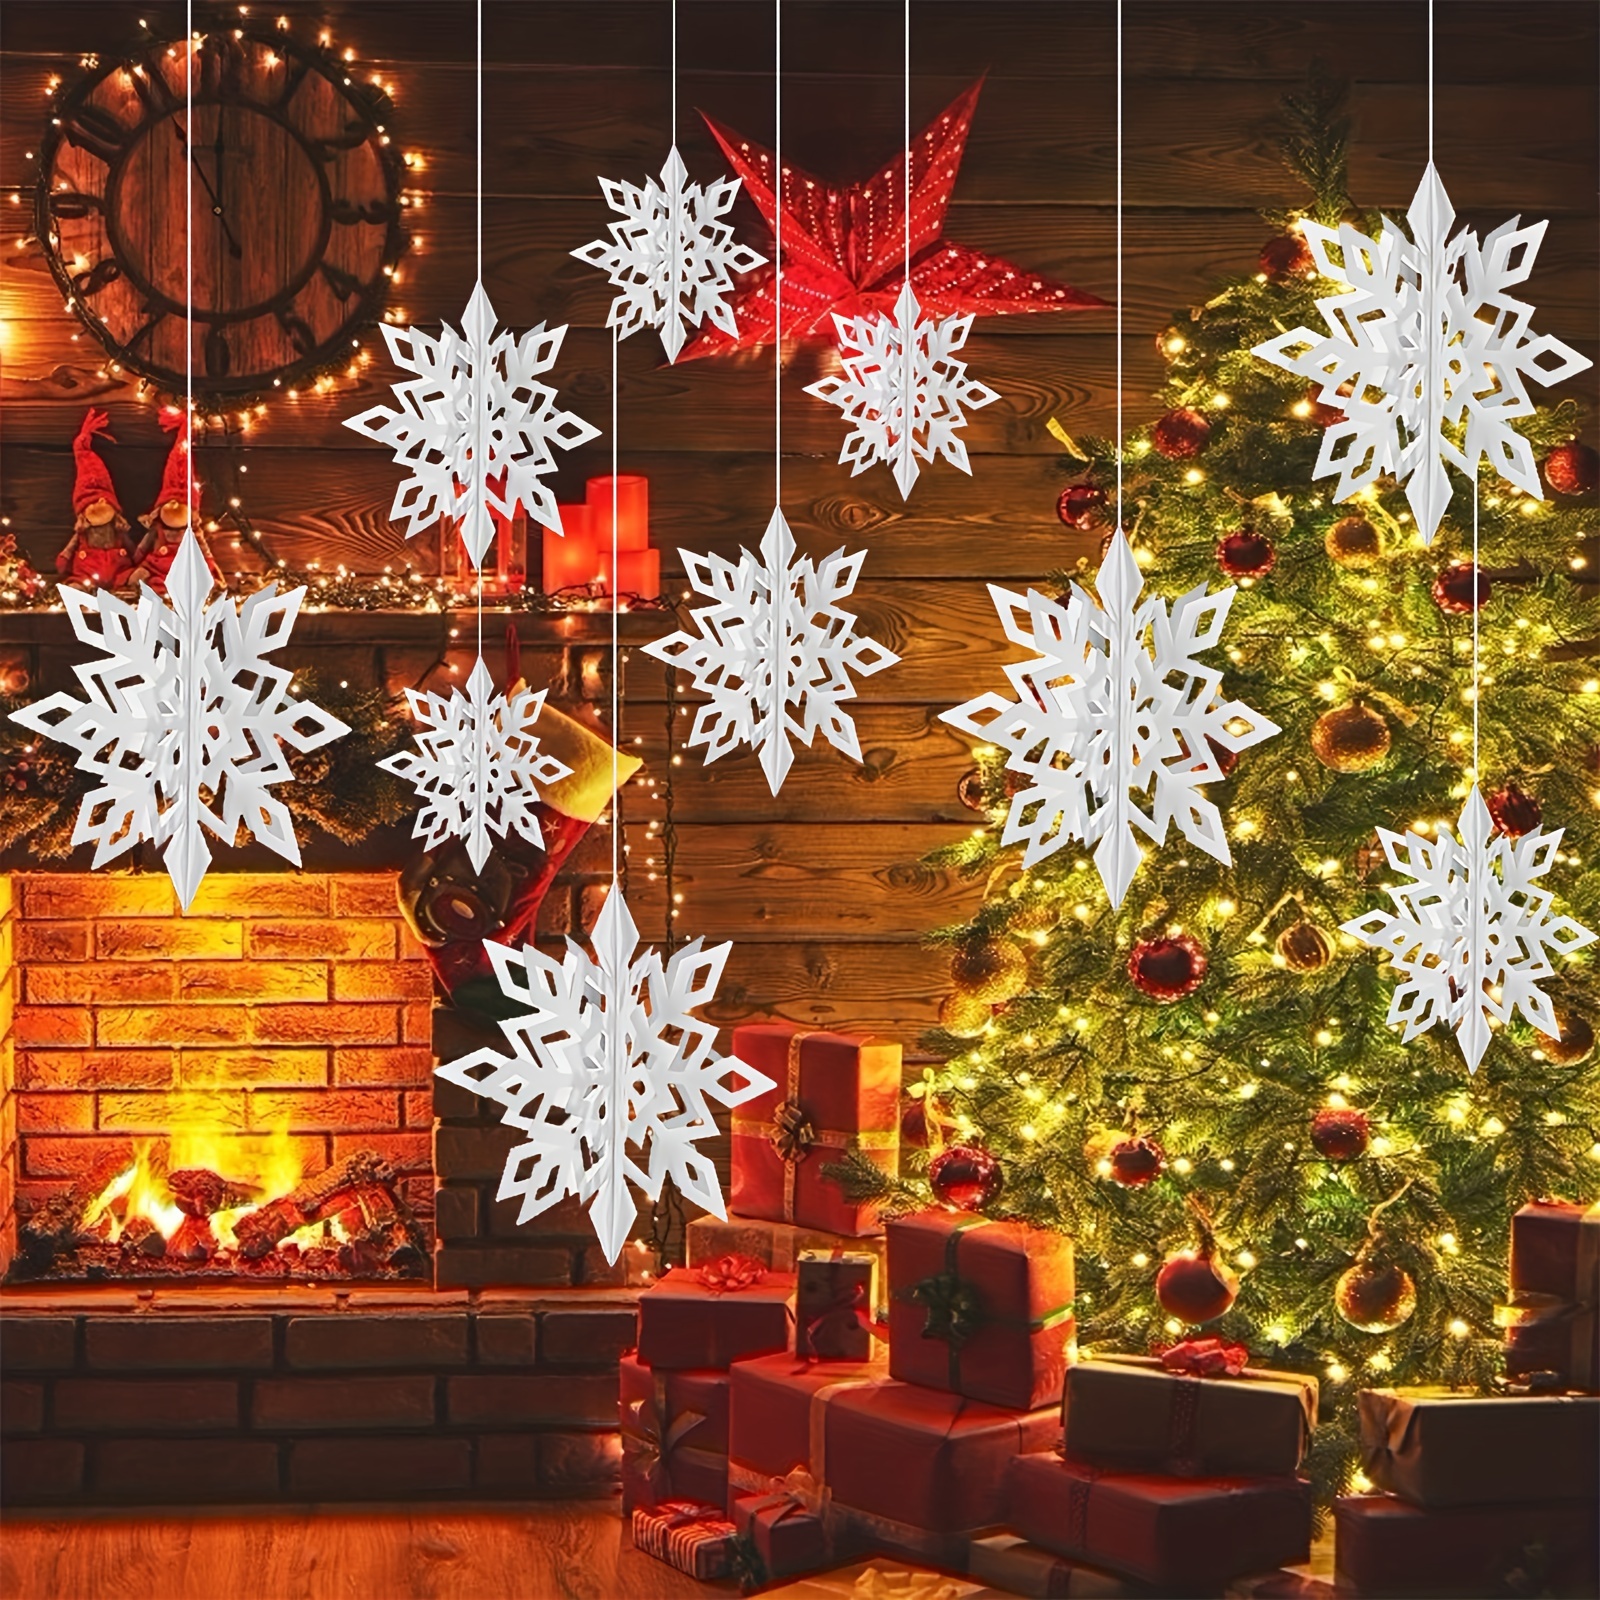 Christmas Tree Snowflake Decorations Christmas Snowflake Charm For